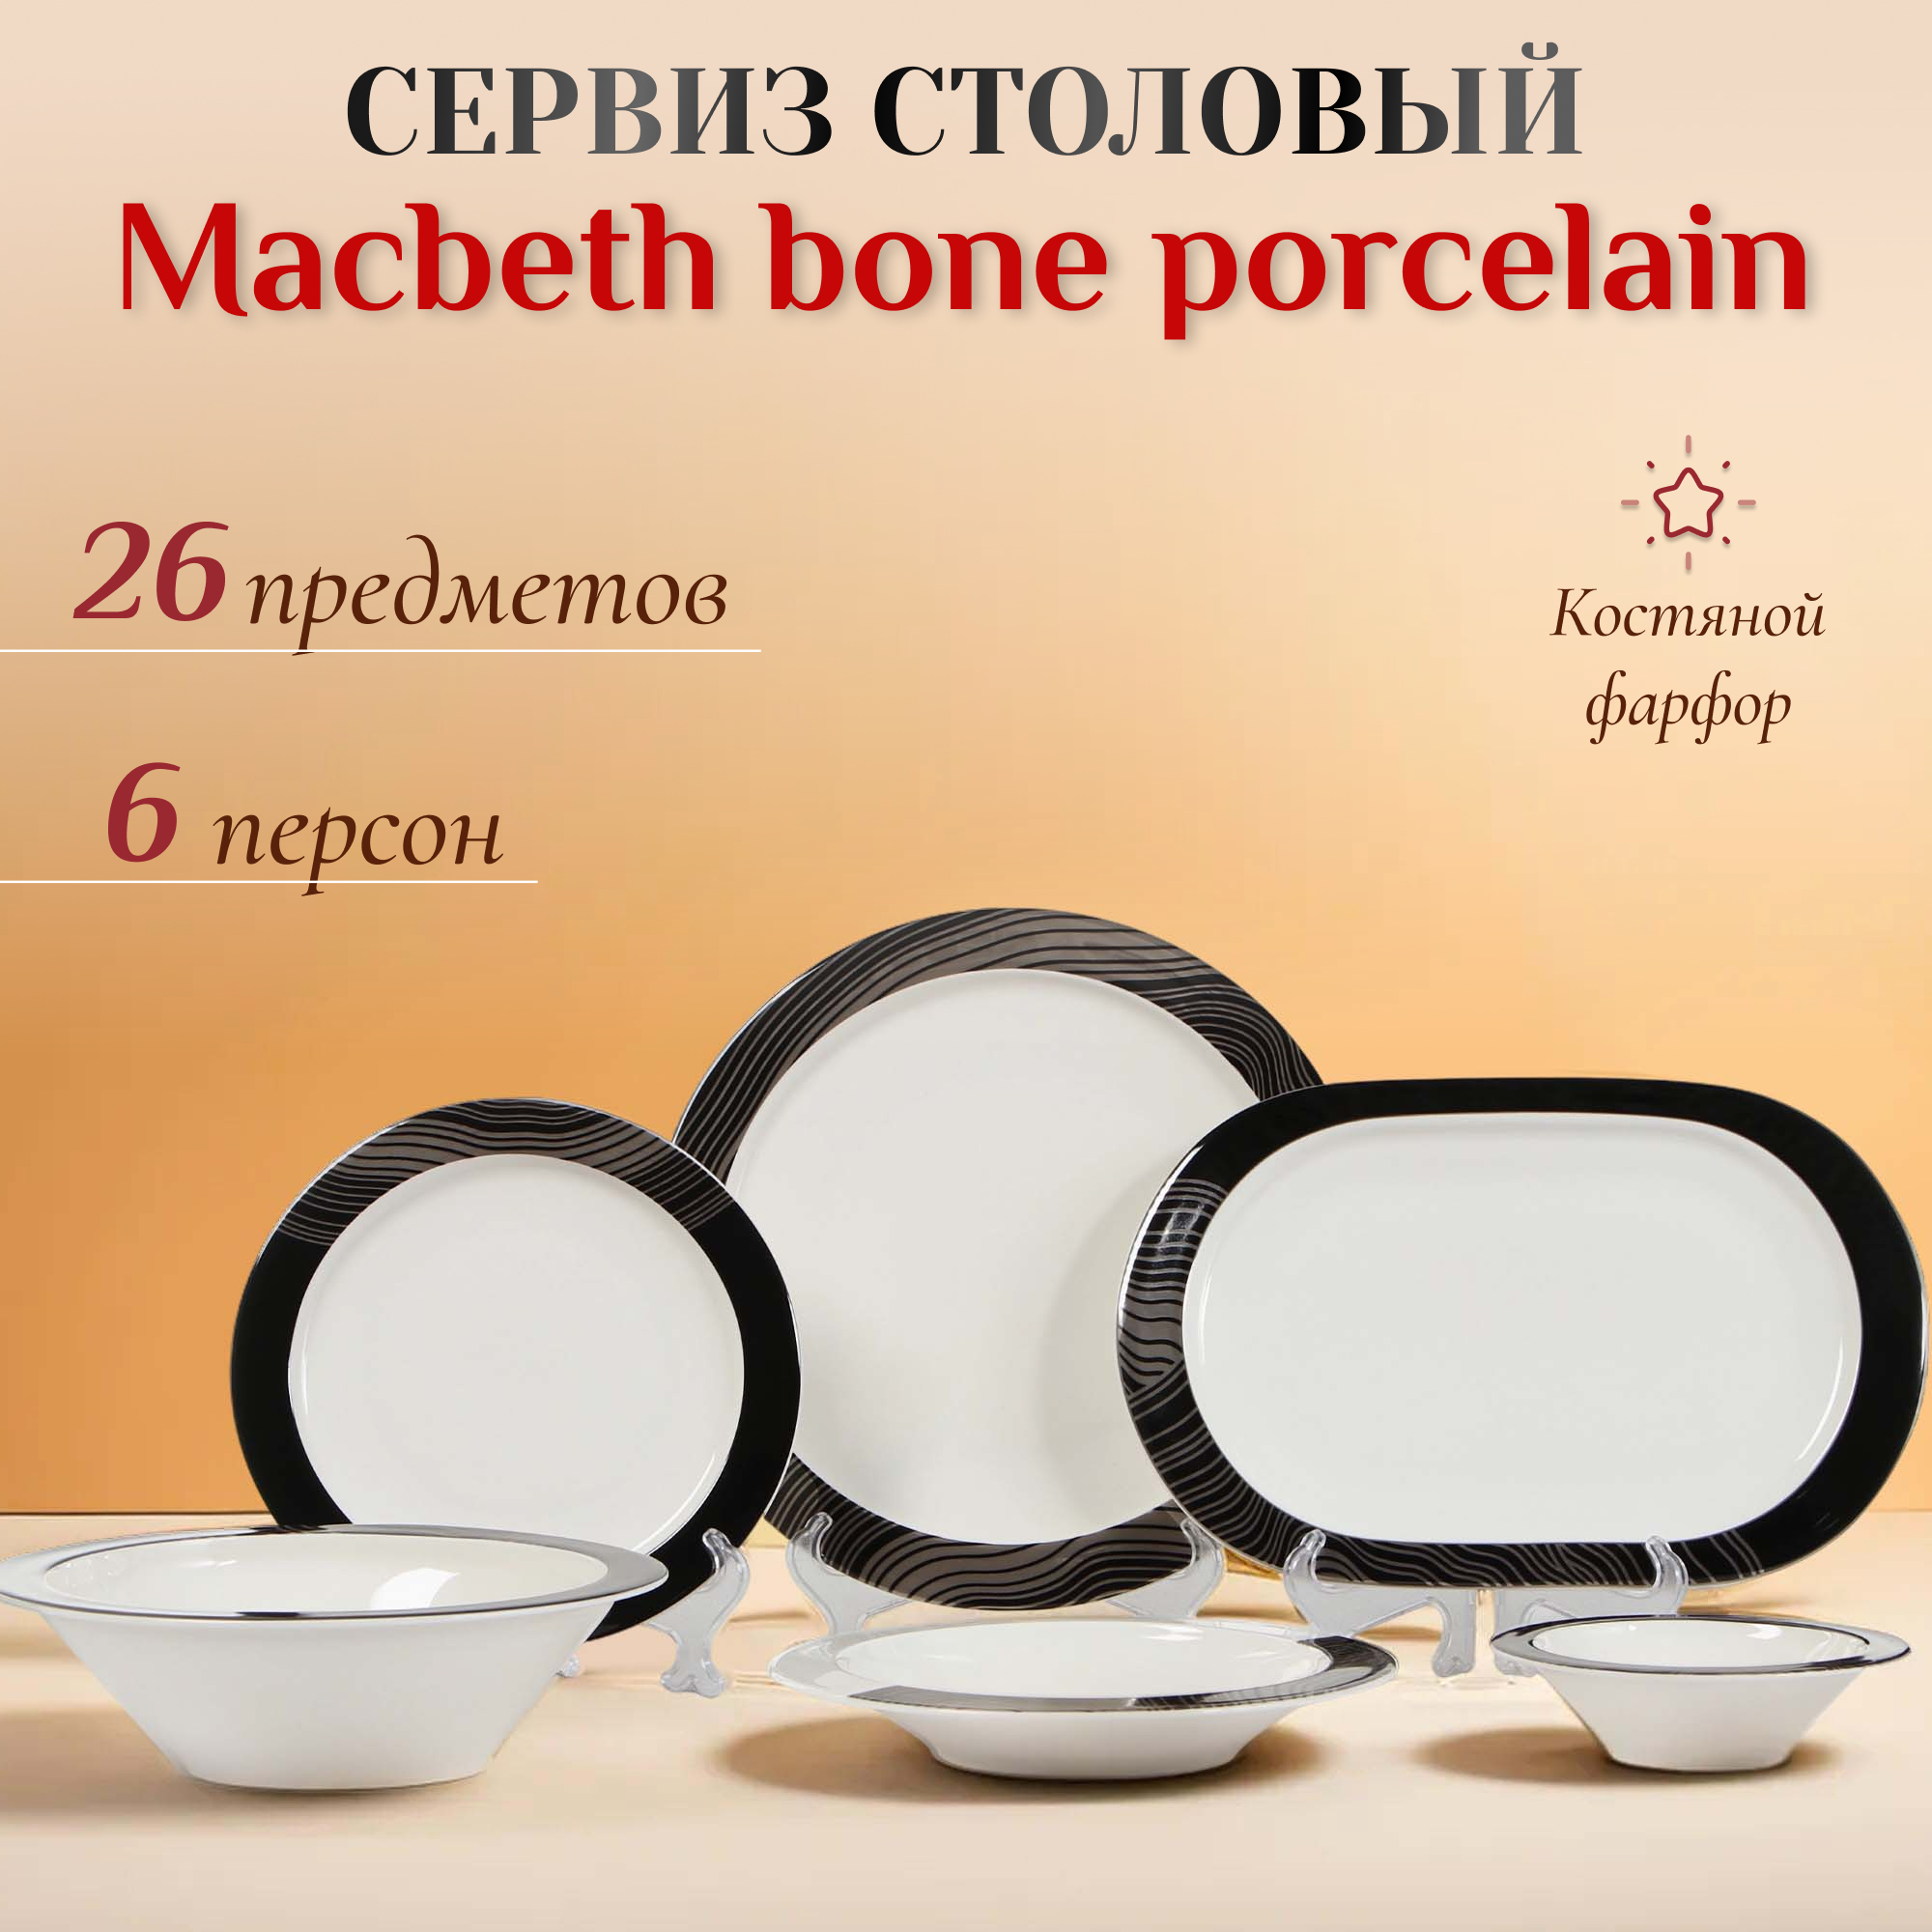 Сервиз столовый Macbeth bone porcelain Flow 26 предметов 6 персон, цвет белый - фото 2